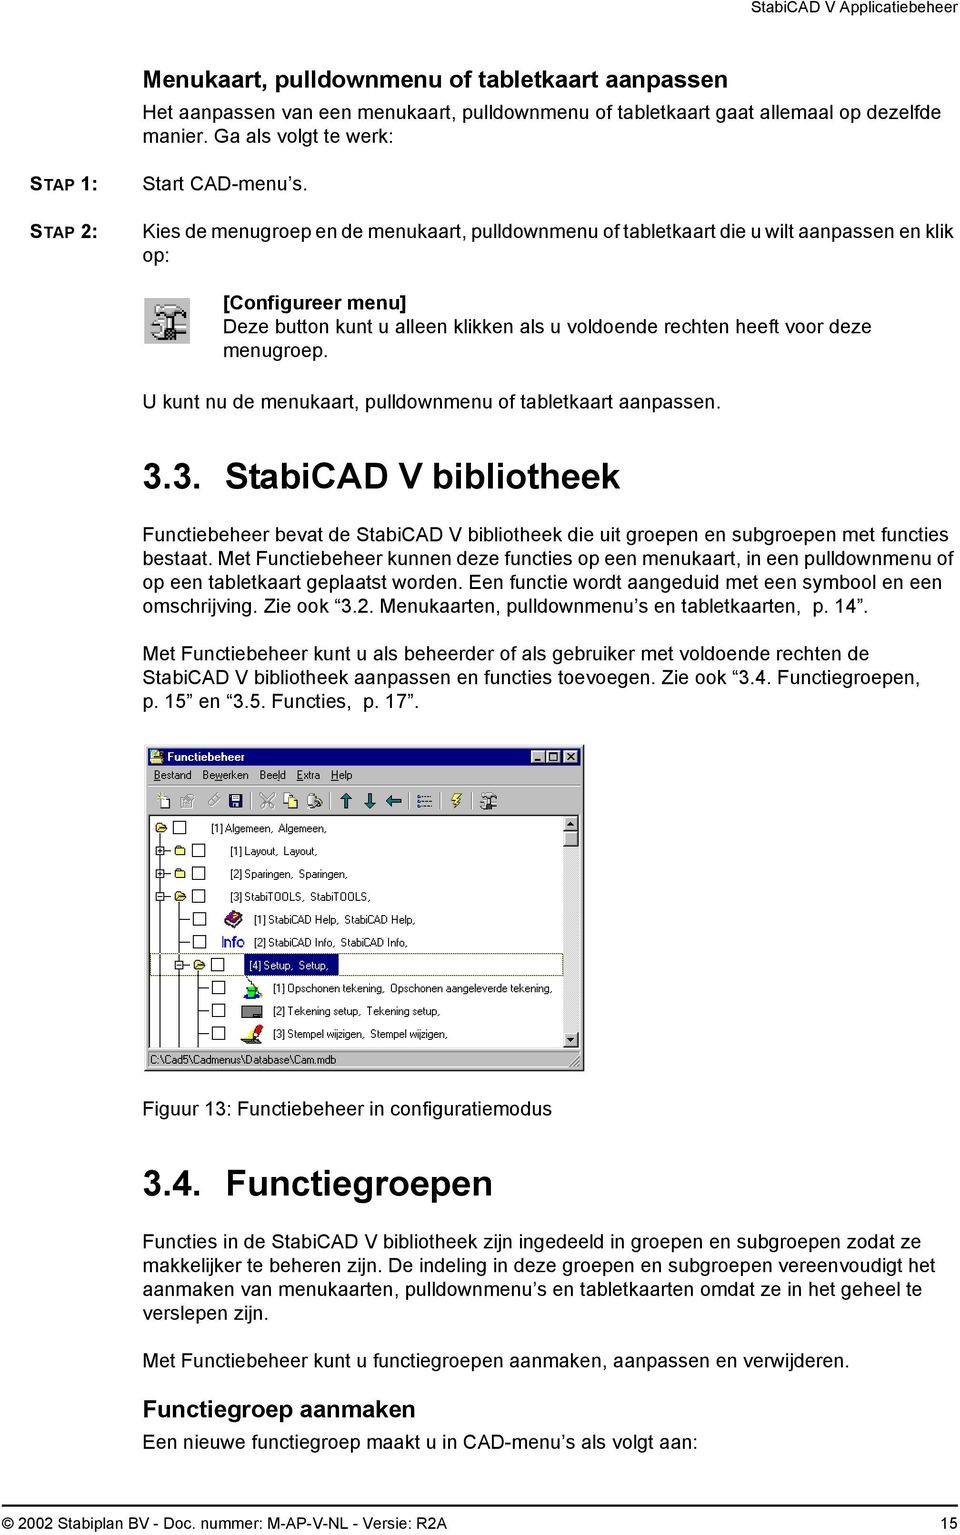 U kunt nu de menukaart, pulldownmenu of tabletkaart aanpassen. 3.3. StabiCAD V bibliotheek Functiebeheer bevat de StabiCAD V bibliotheek die uit groepen en subgroepen met functies bestaat.